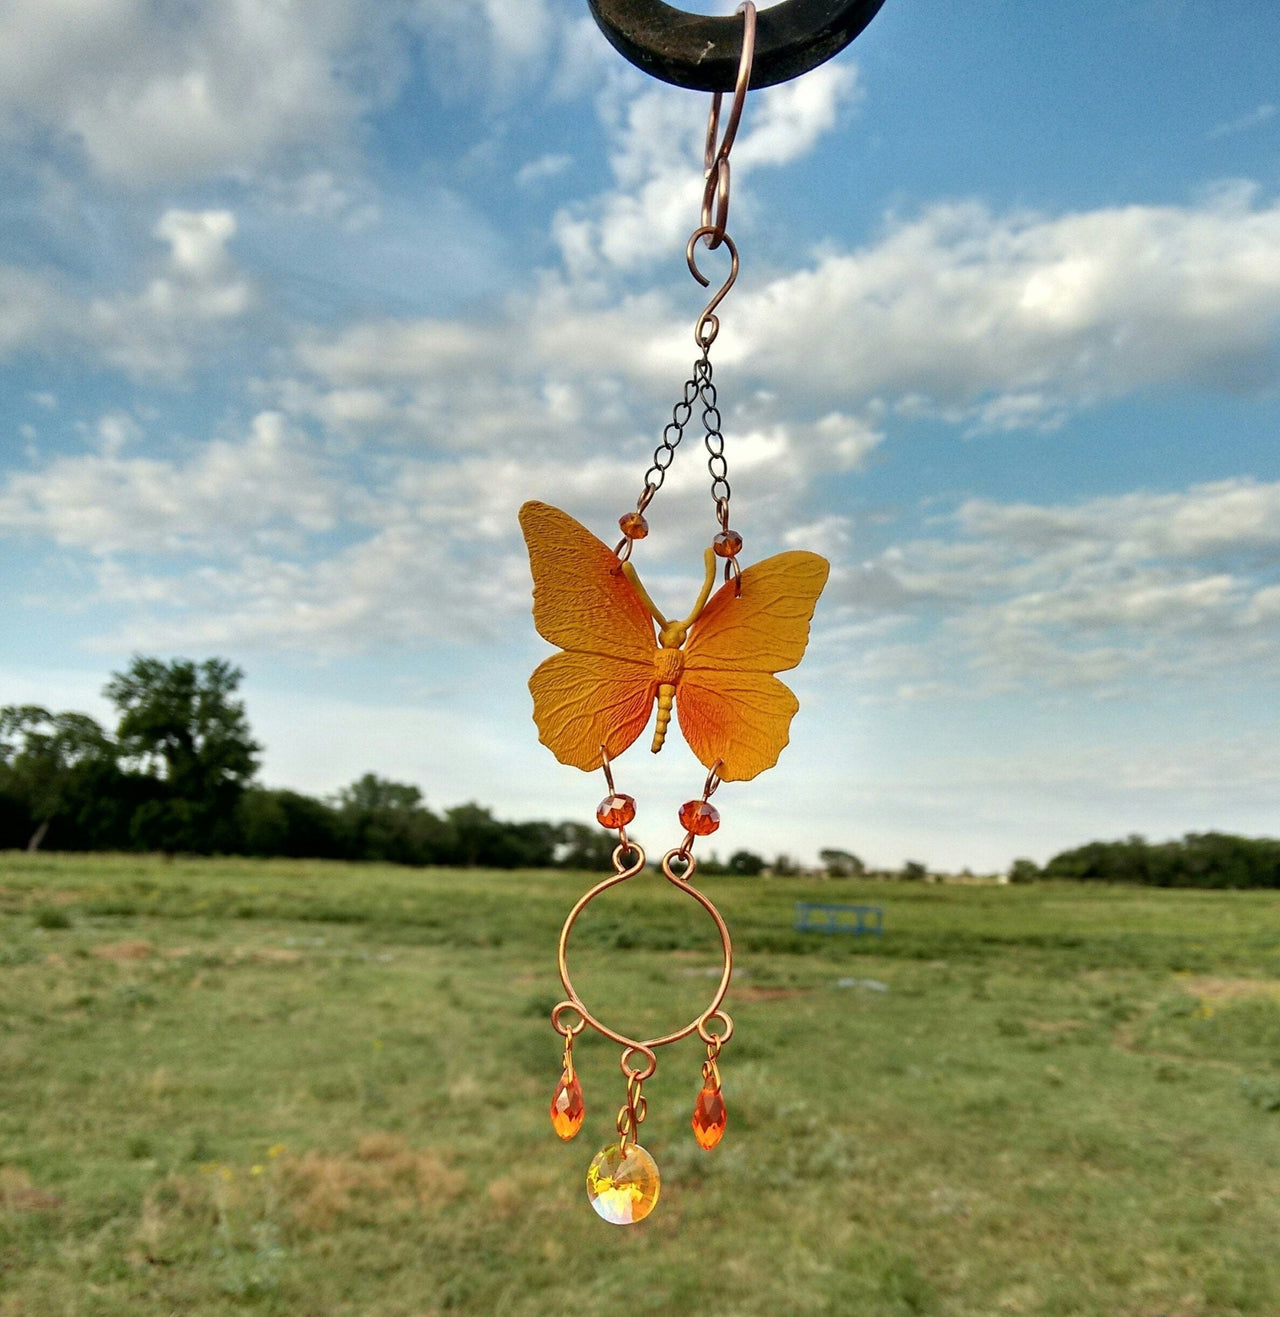 Handcrafted yellow butterfly sun catcher garden ornament